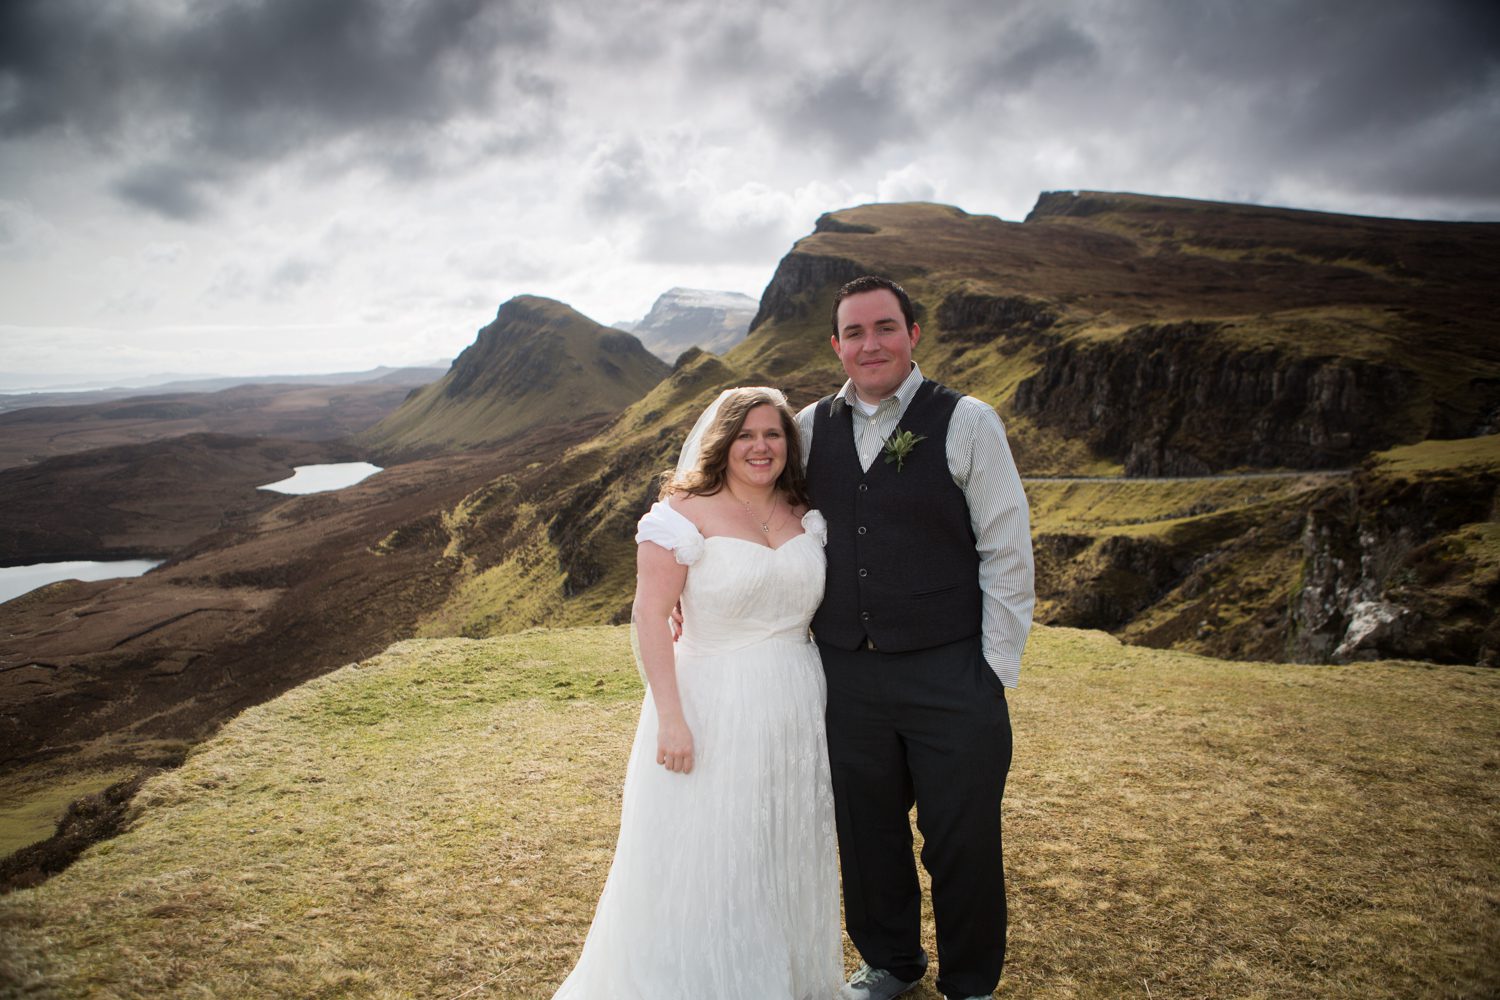  Quiraing wedding photography, Isle of Skye wedding photography, Skye elopement